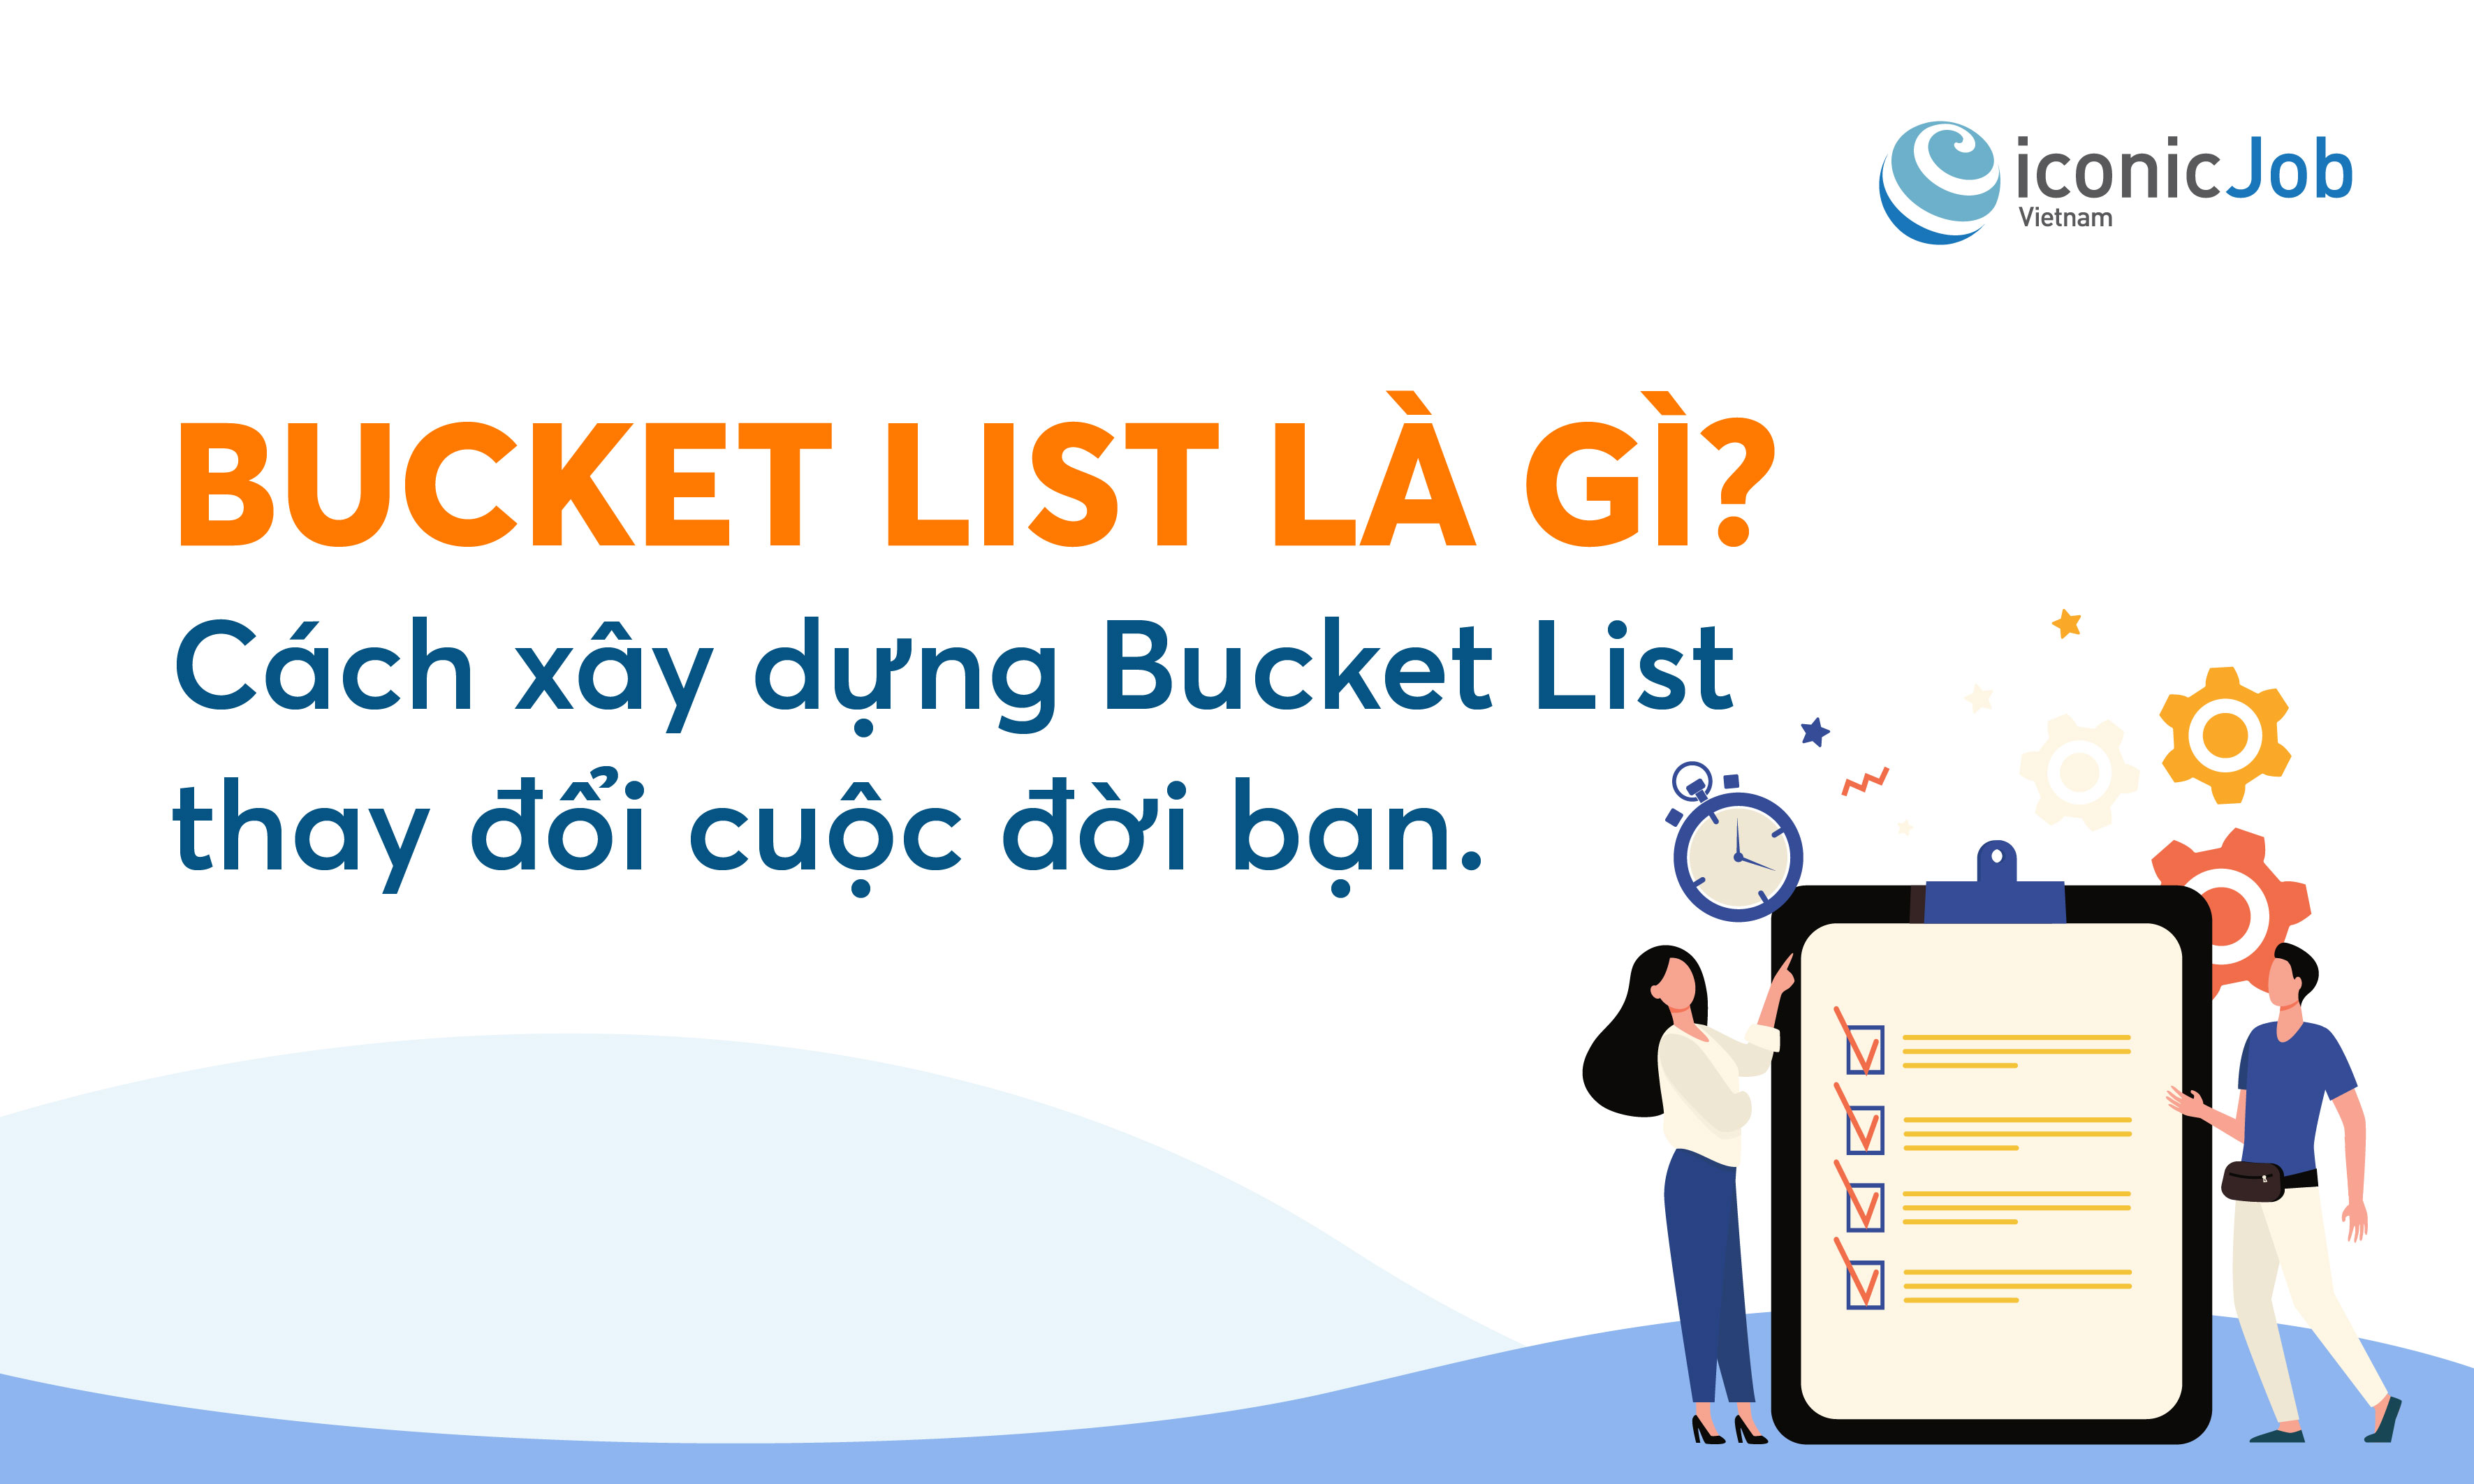 Bucket List là gì? Cách xây dựng Bucket List thay đổi cuộc đời bạn